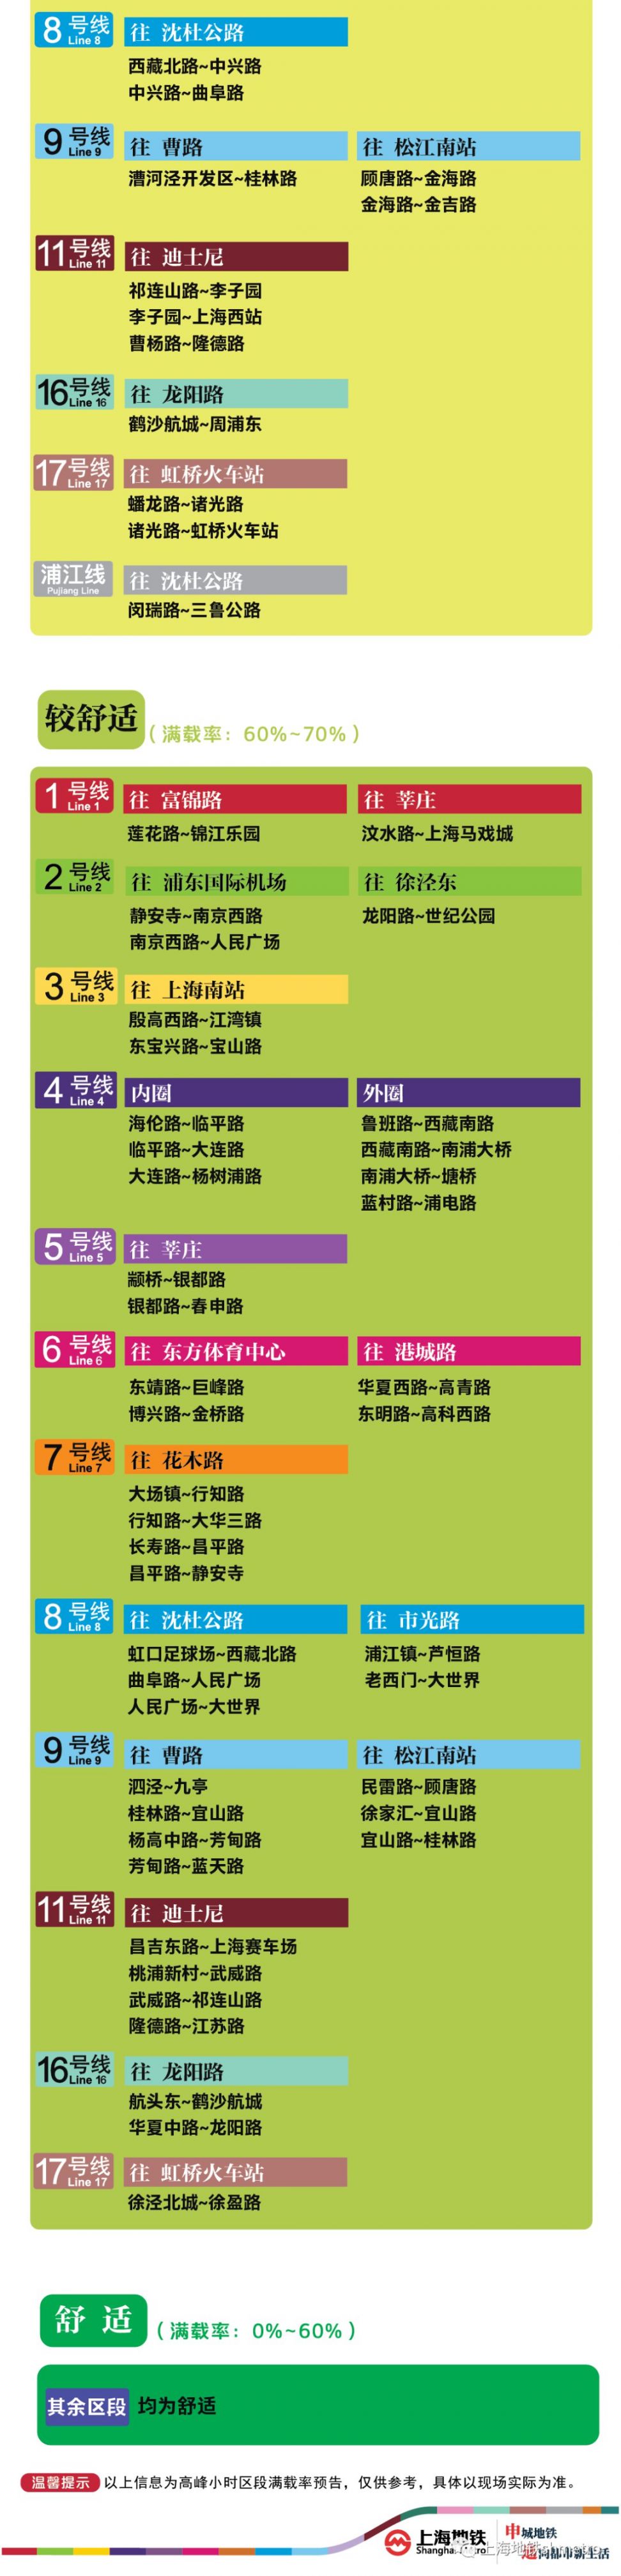 7月14日上海11座地铁站早高峰限流(附舒适度预告)